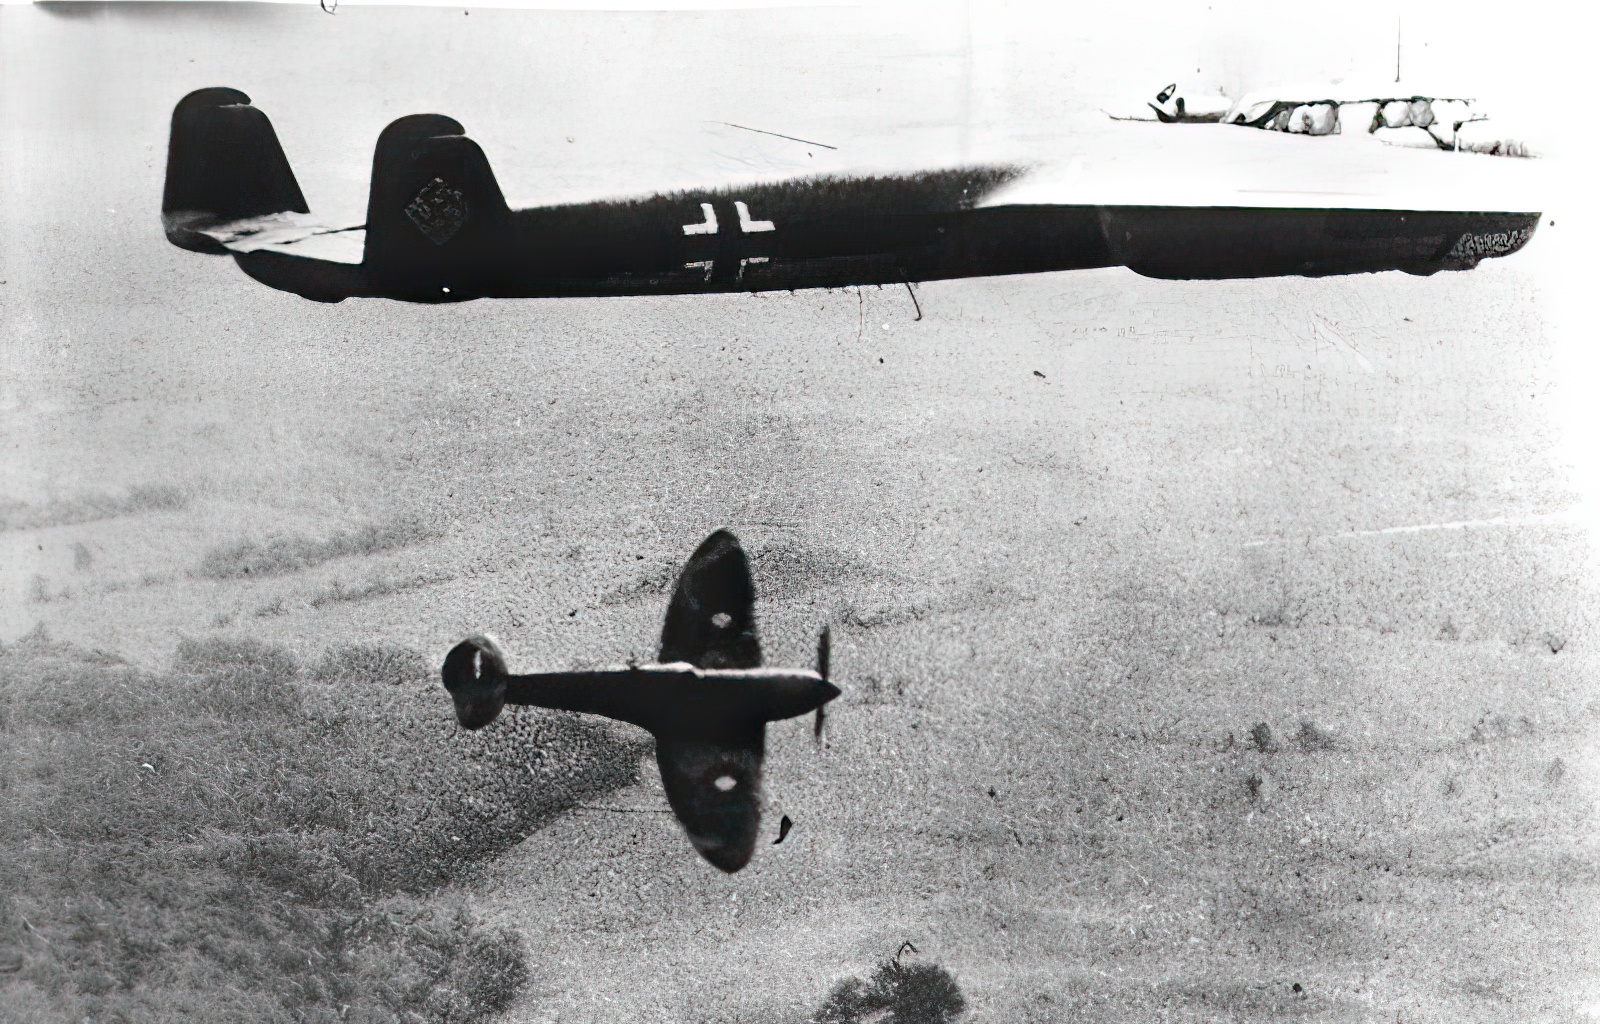 Dornier Do 17 and Supermarine Spitfire, 1940